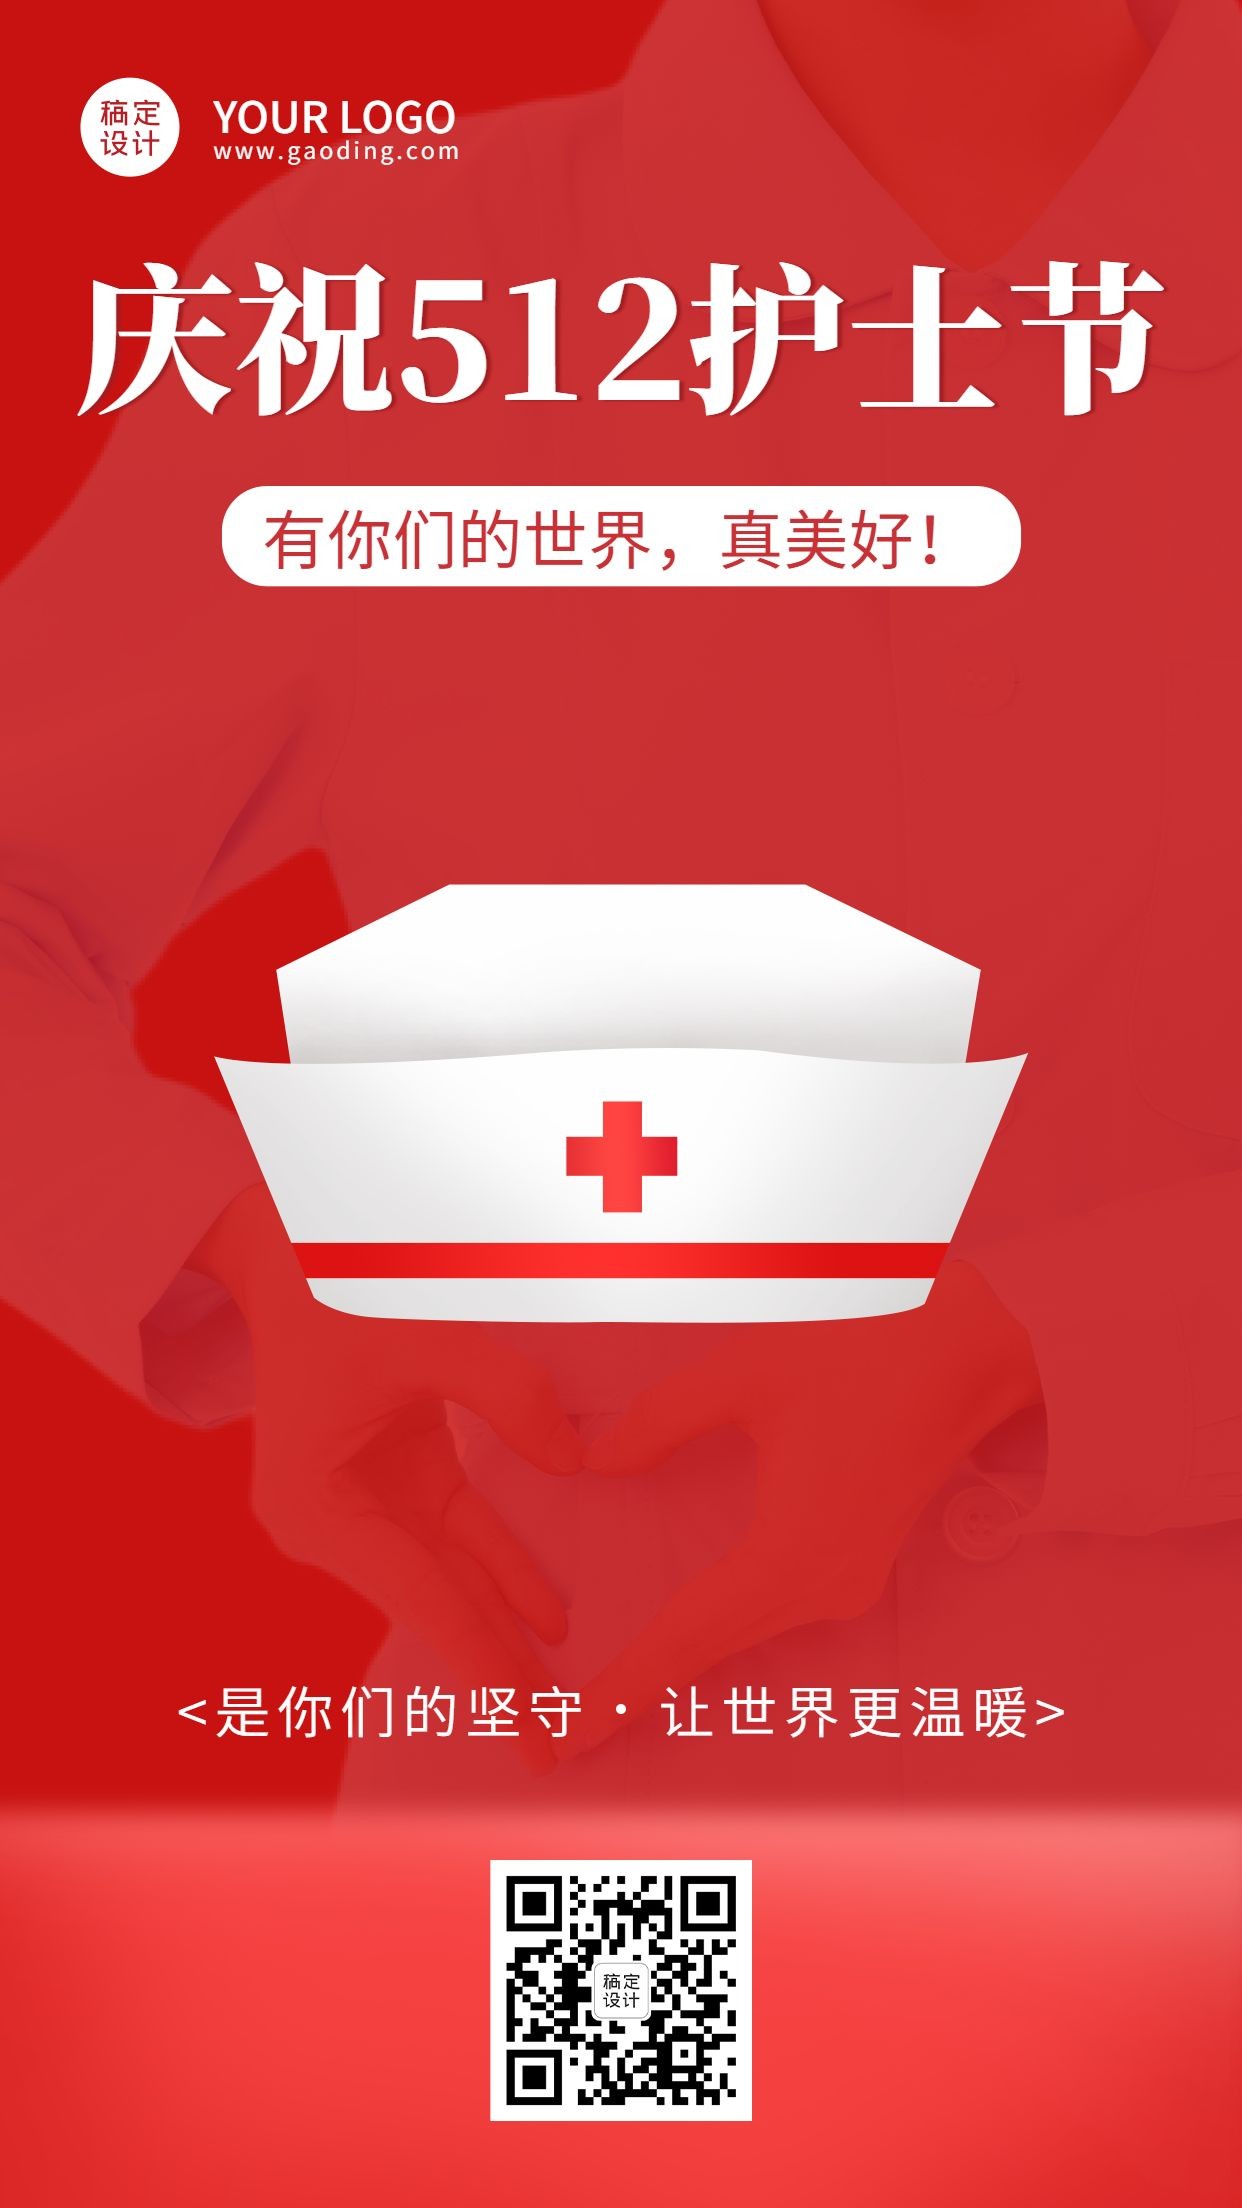 国际护士节节日宣传手机海报预览效果